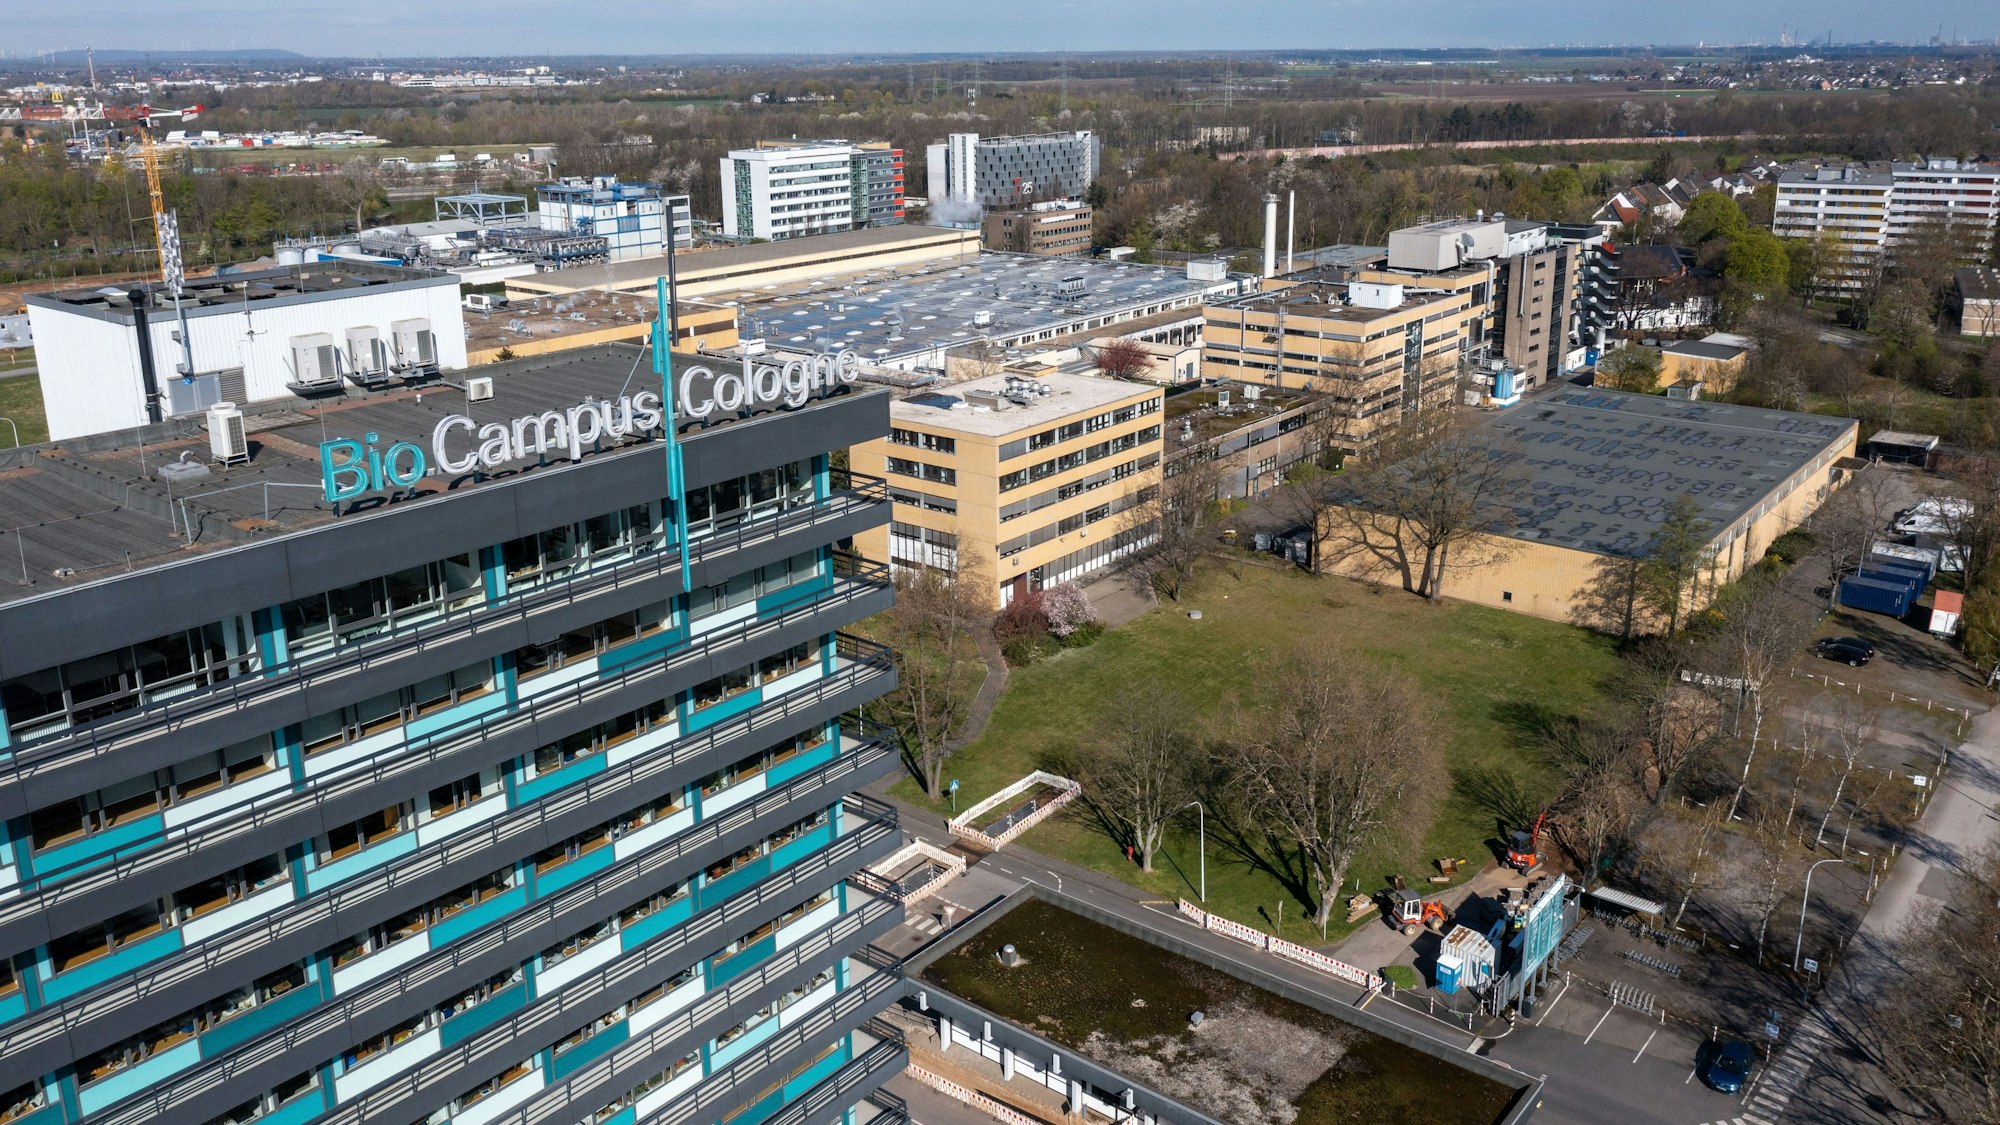 Der Biocampus Cologne in Köln-Bocklemünd in einer Luftaufnahme mit Drohne. Foto: Uwe Weiser